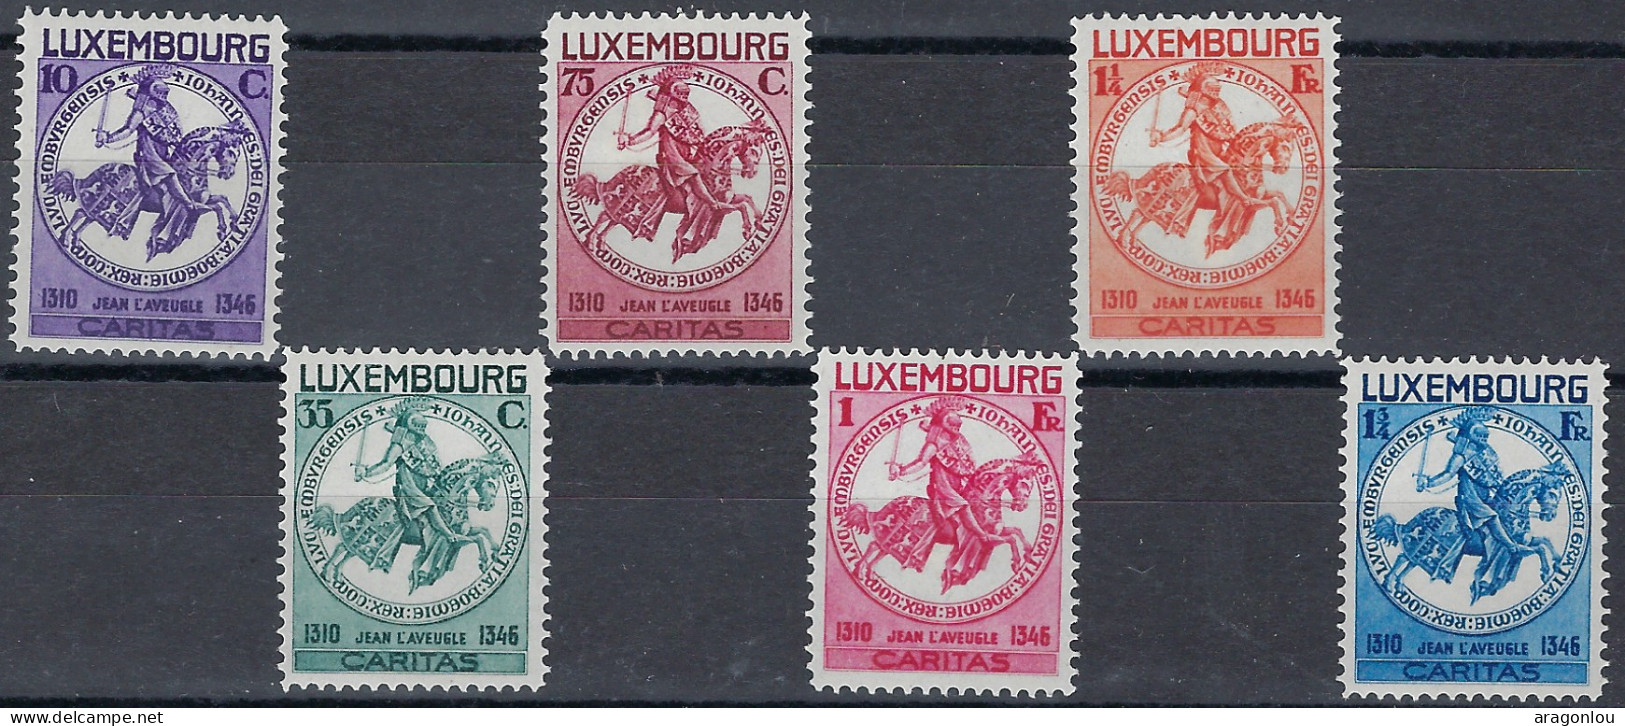 Luxembourg - Luxemburg - Timbres - 1934   Jean L'Aveugle   Série  * - Oblitérés